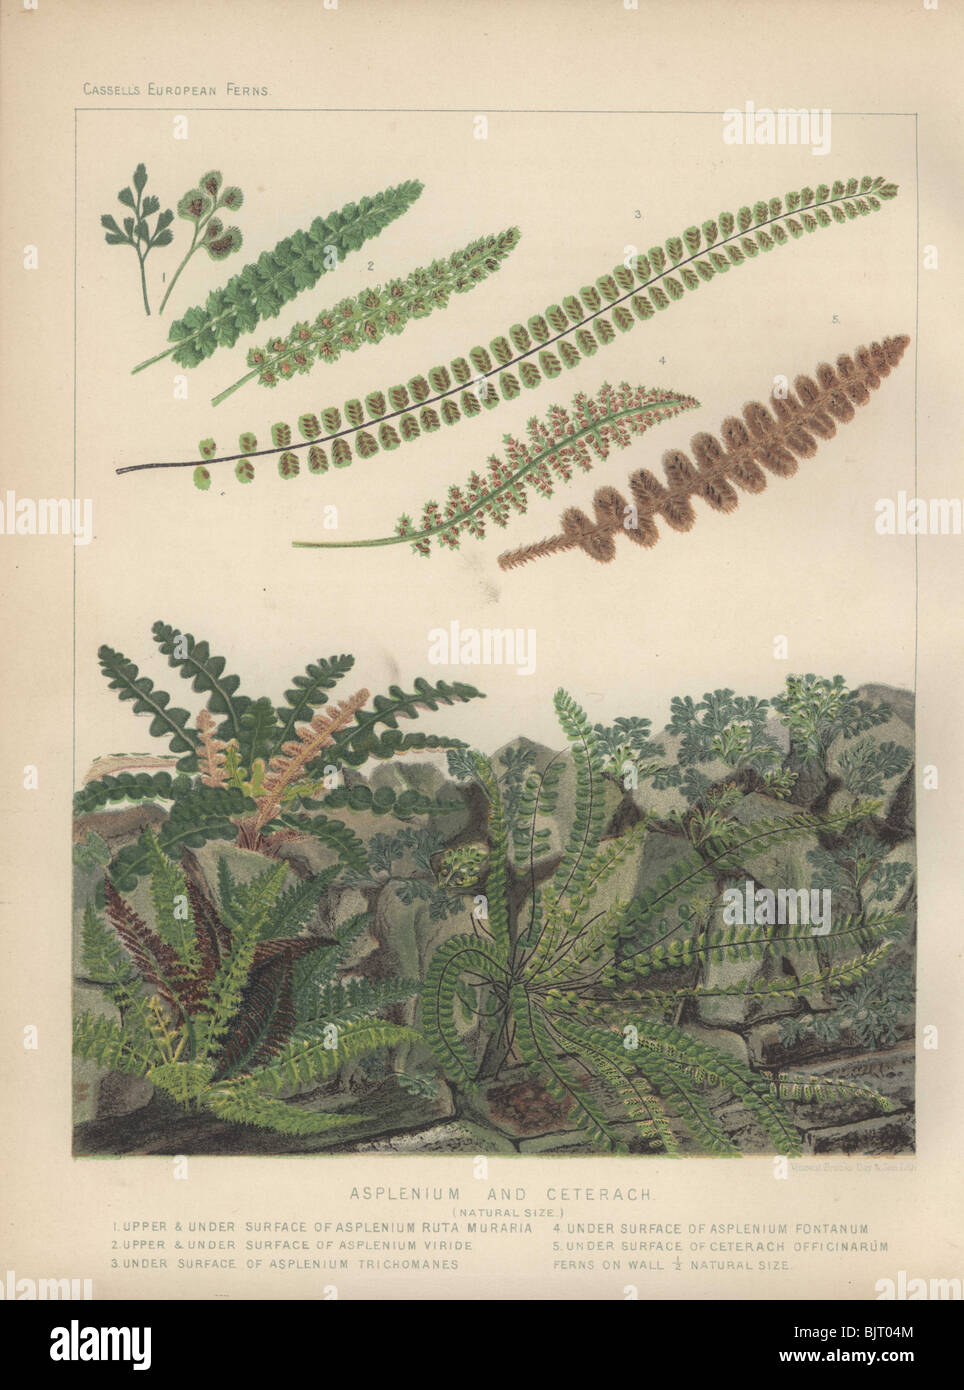 Spleenwort (Asplenium viride), maidenhair (Asplenium trichomanes) and ceterach (Ceterach officinarum) ferns Stock Photo